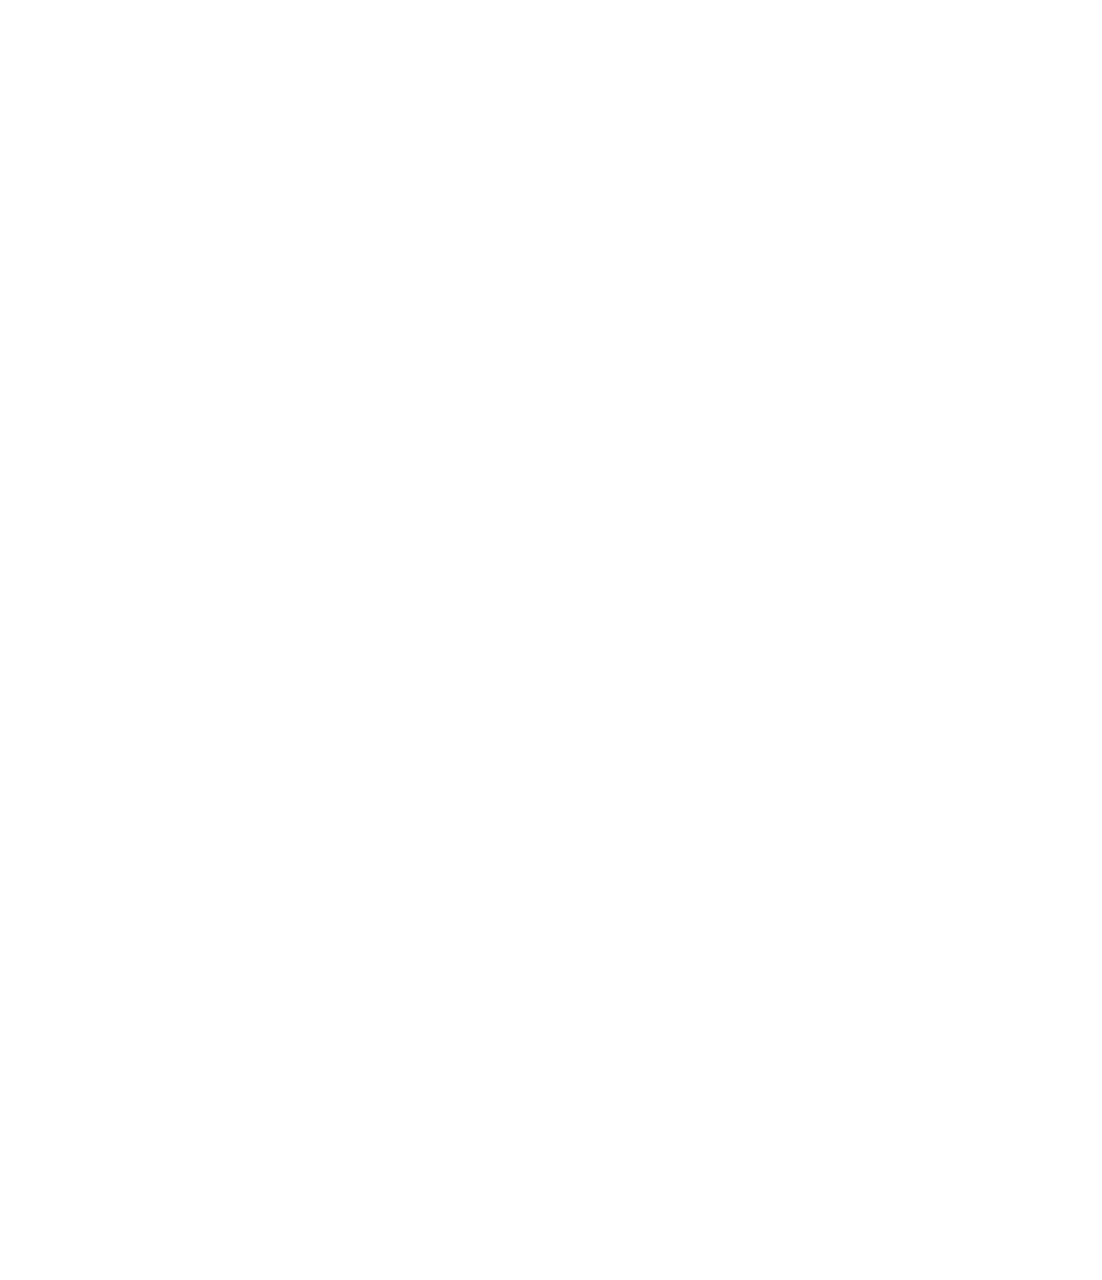 Atlanta Pet Resort Logo